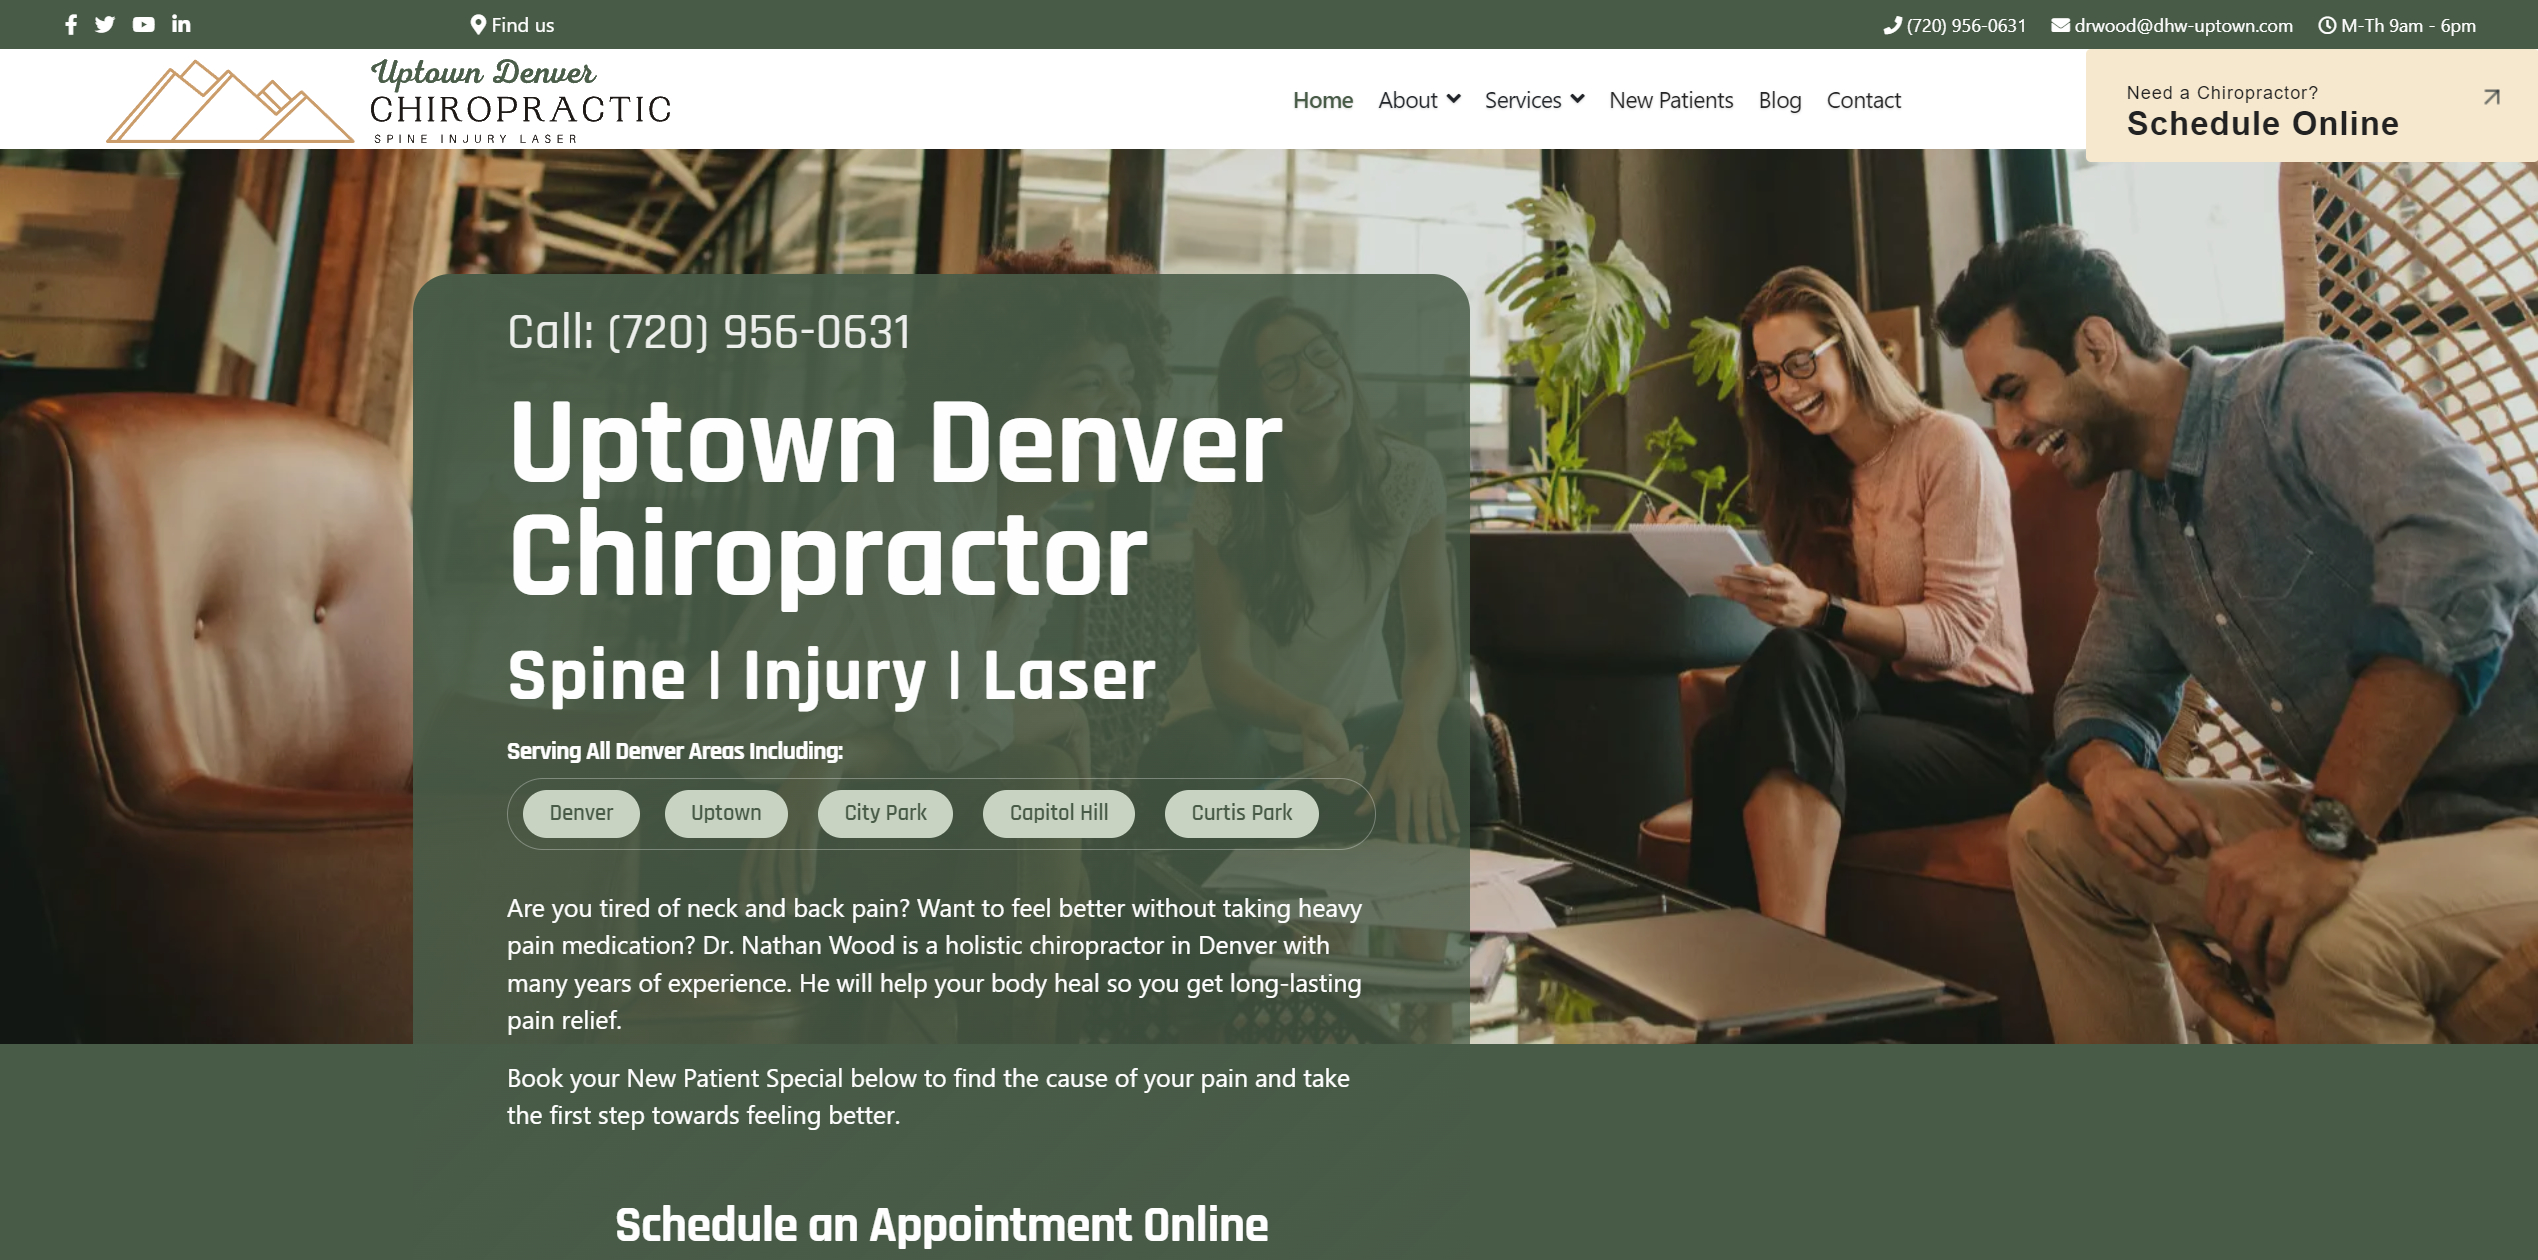 Uptown Denver Chiropractor